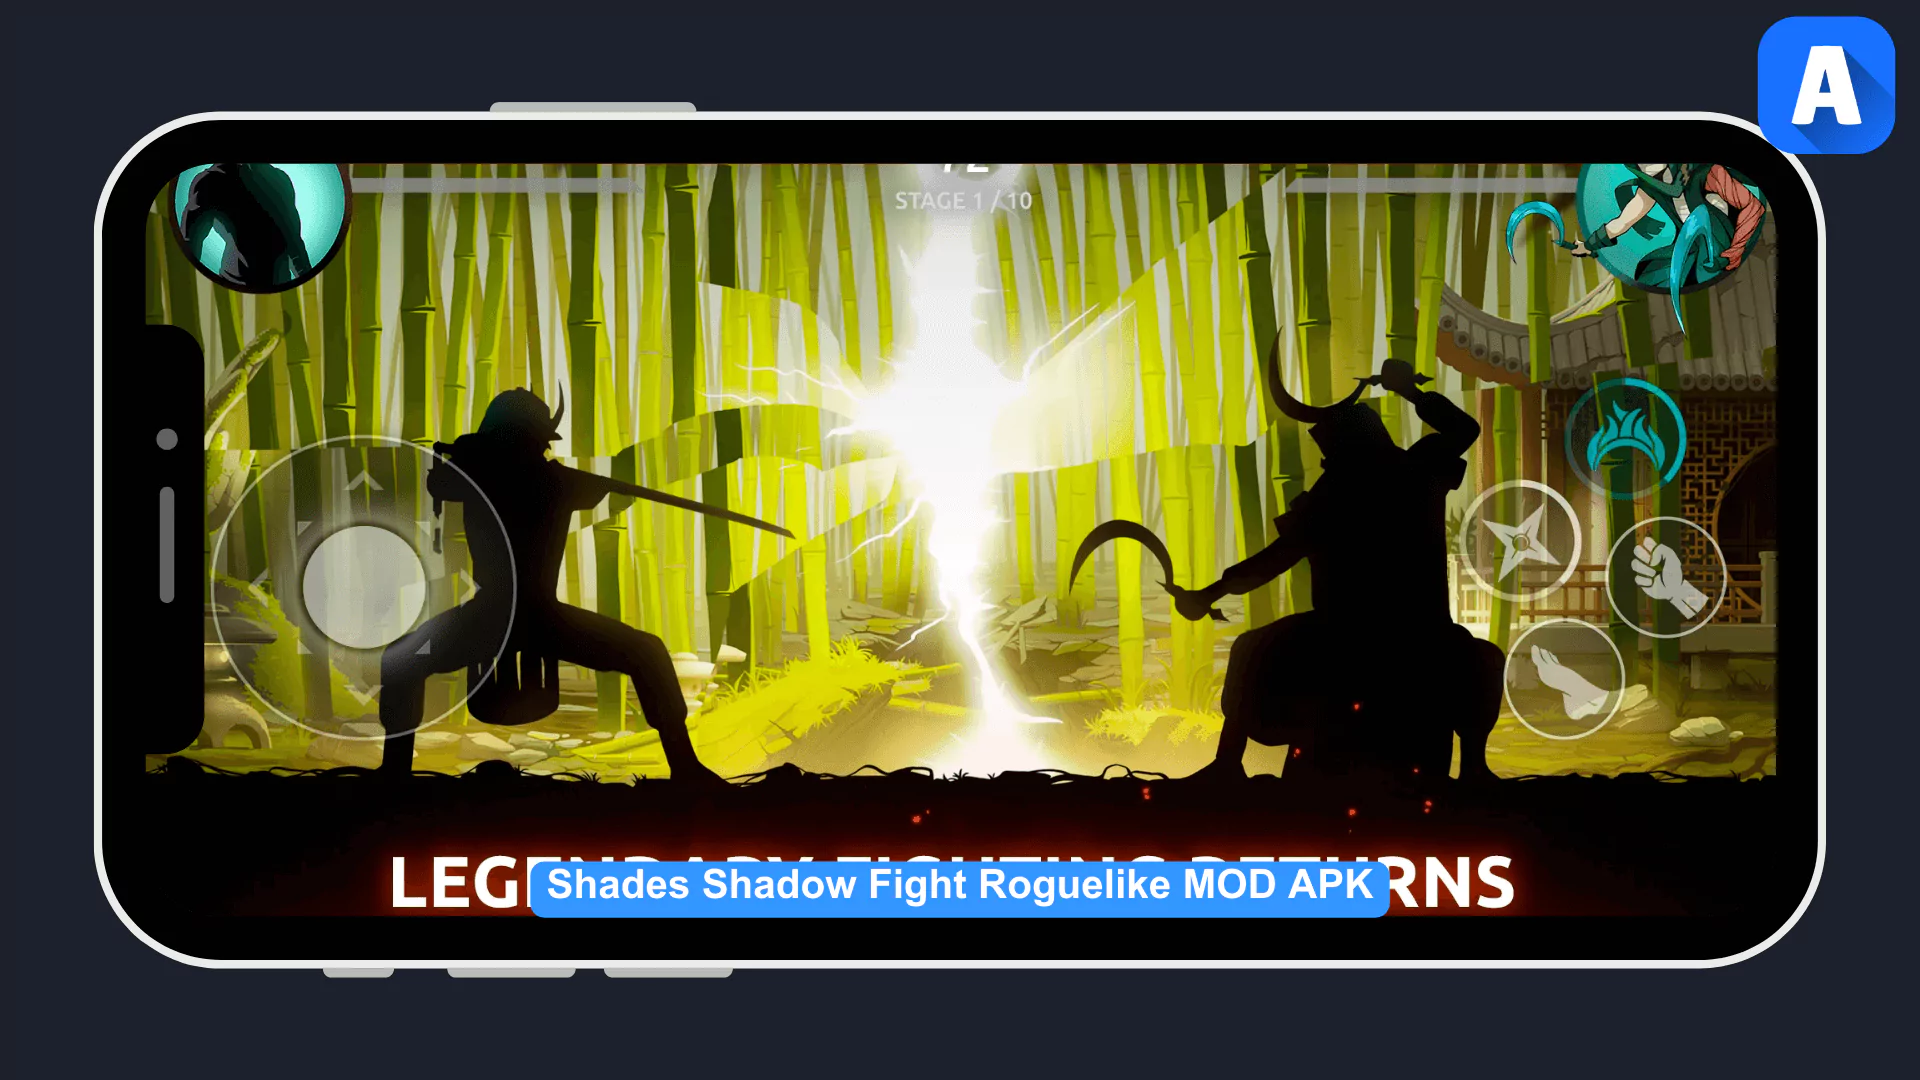 Shadow Fight Roguelike MOD APK screenshot 1